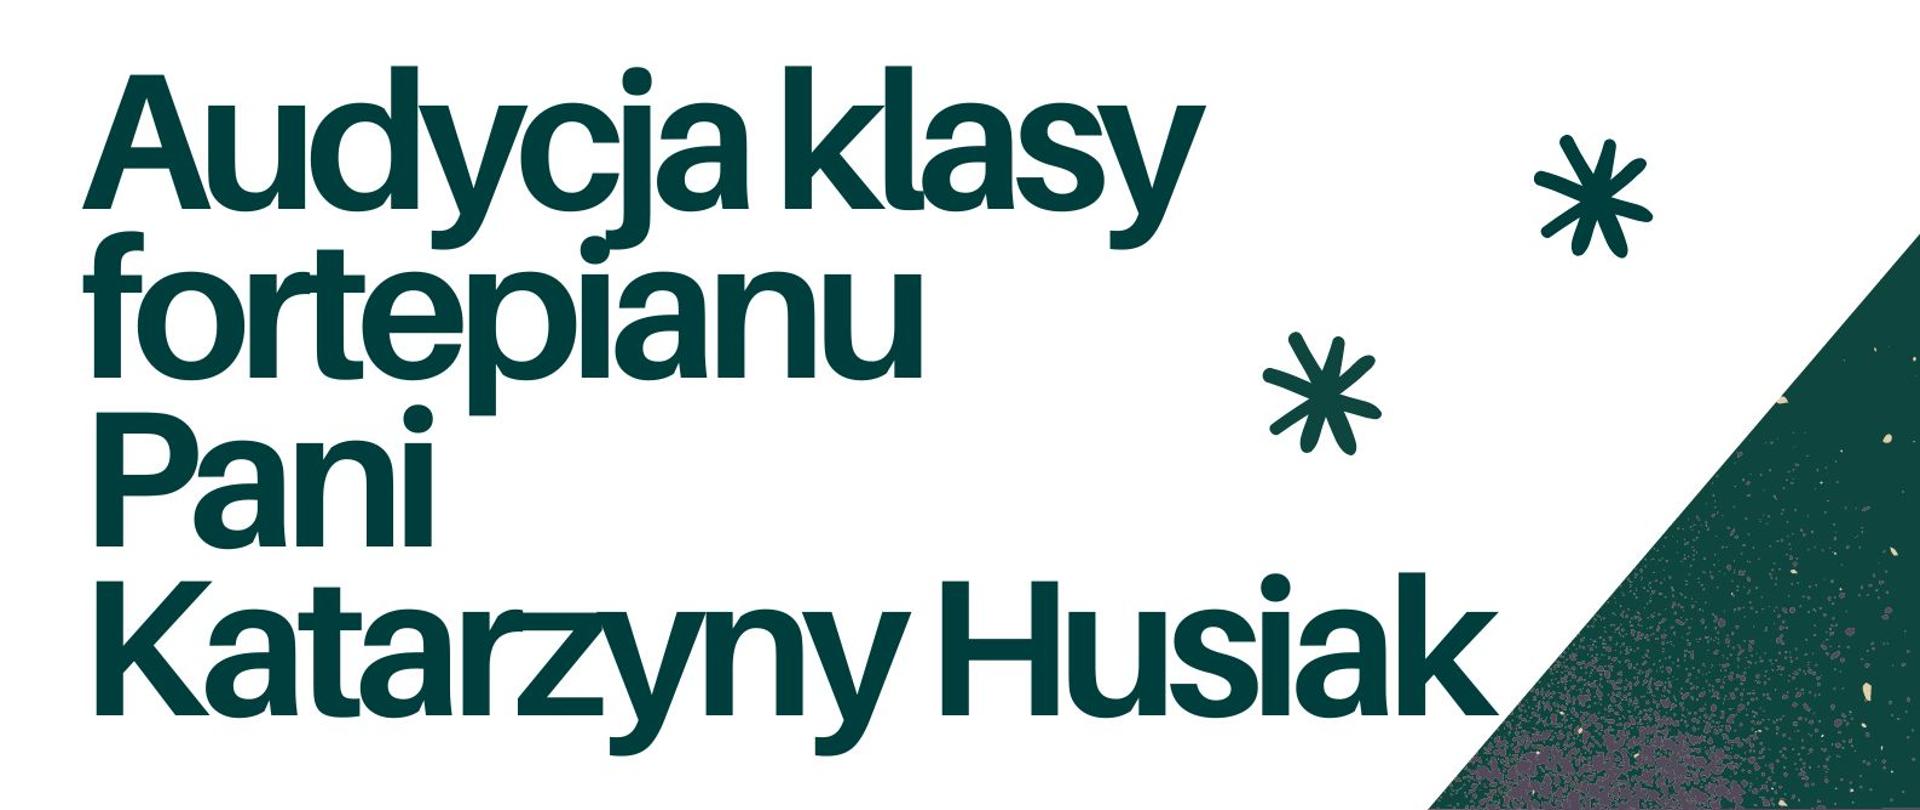 Plakat zawiera informację o audycji klasy fortepianu Pani Katarzyny Husiak, w dolnym lewym rogu fortepian, w prawym informacja o miejscu odbywania się audycji, plakat w kolorach bieli, zieleni, szarości i beżu.